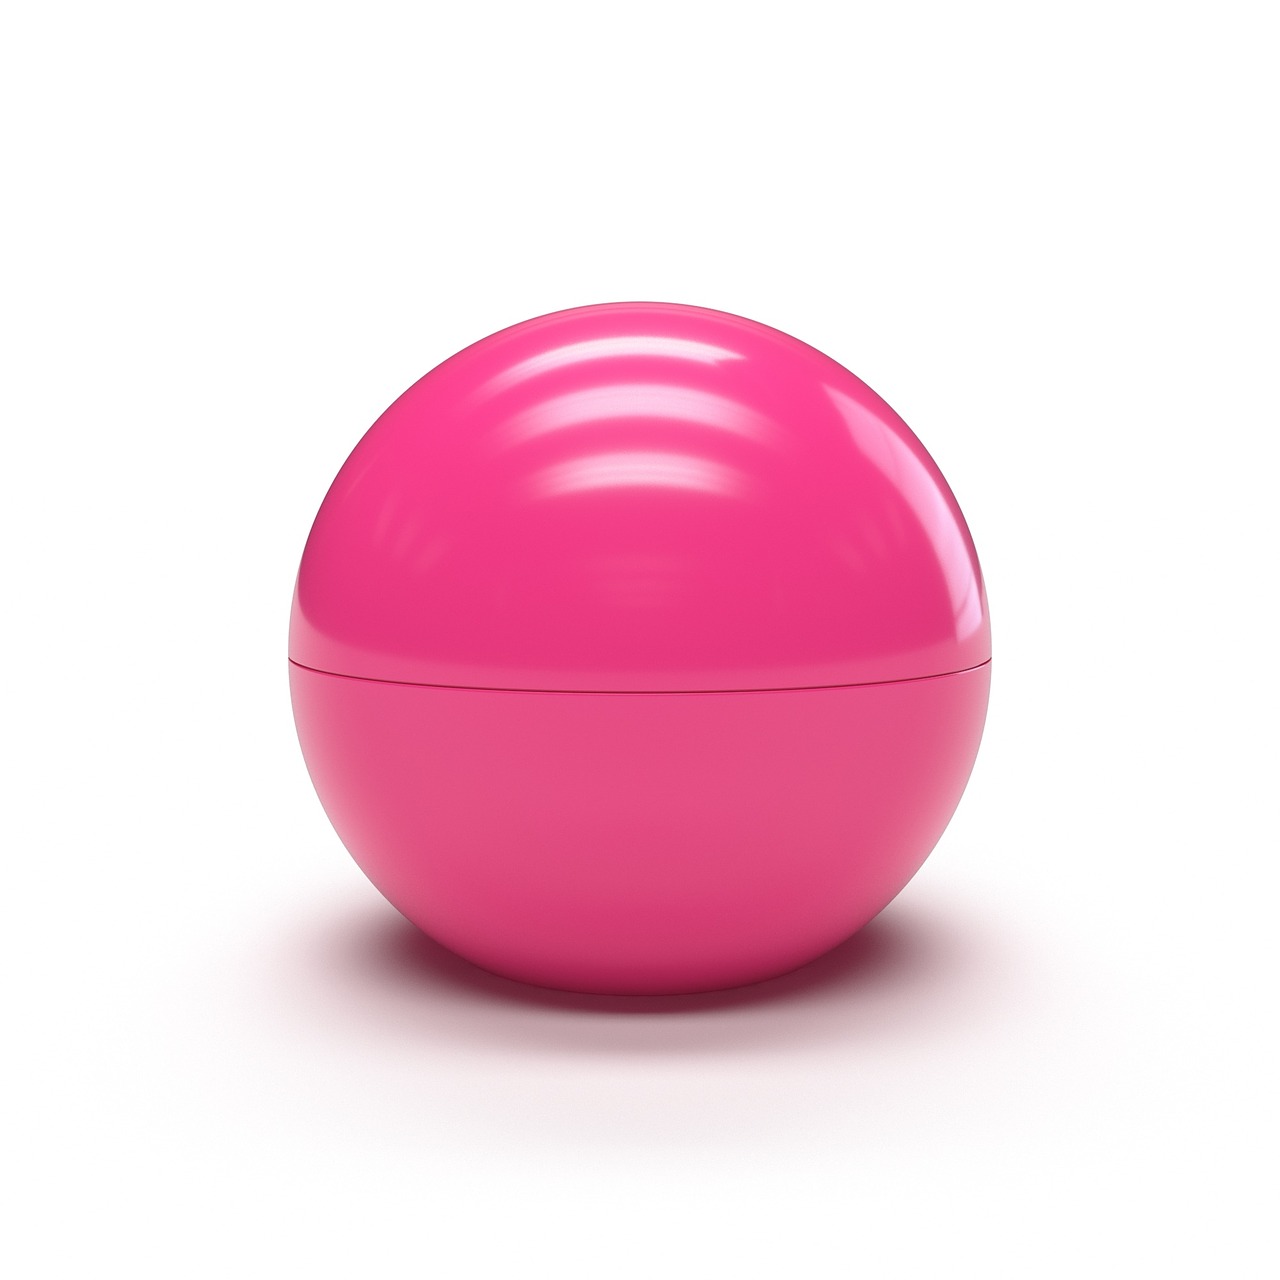 ball gloss pink free photo